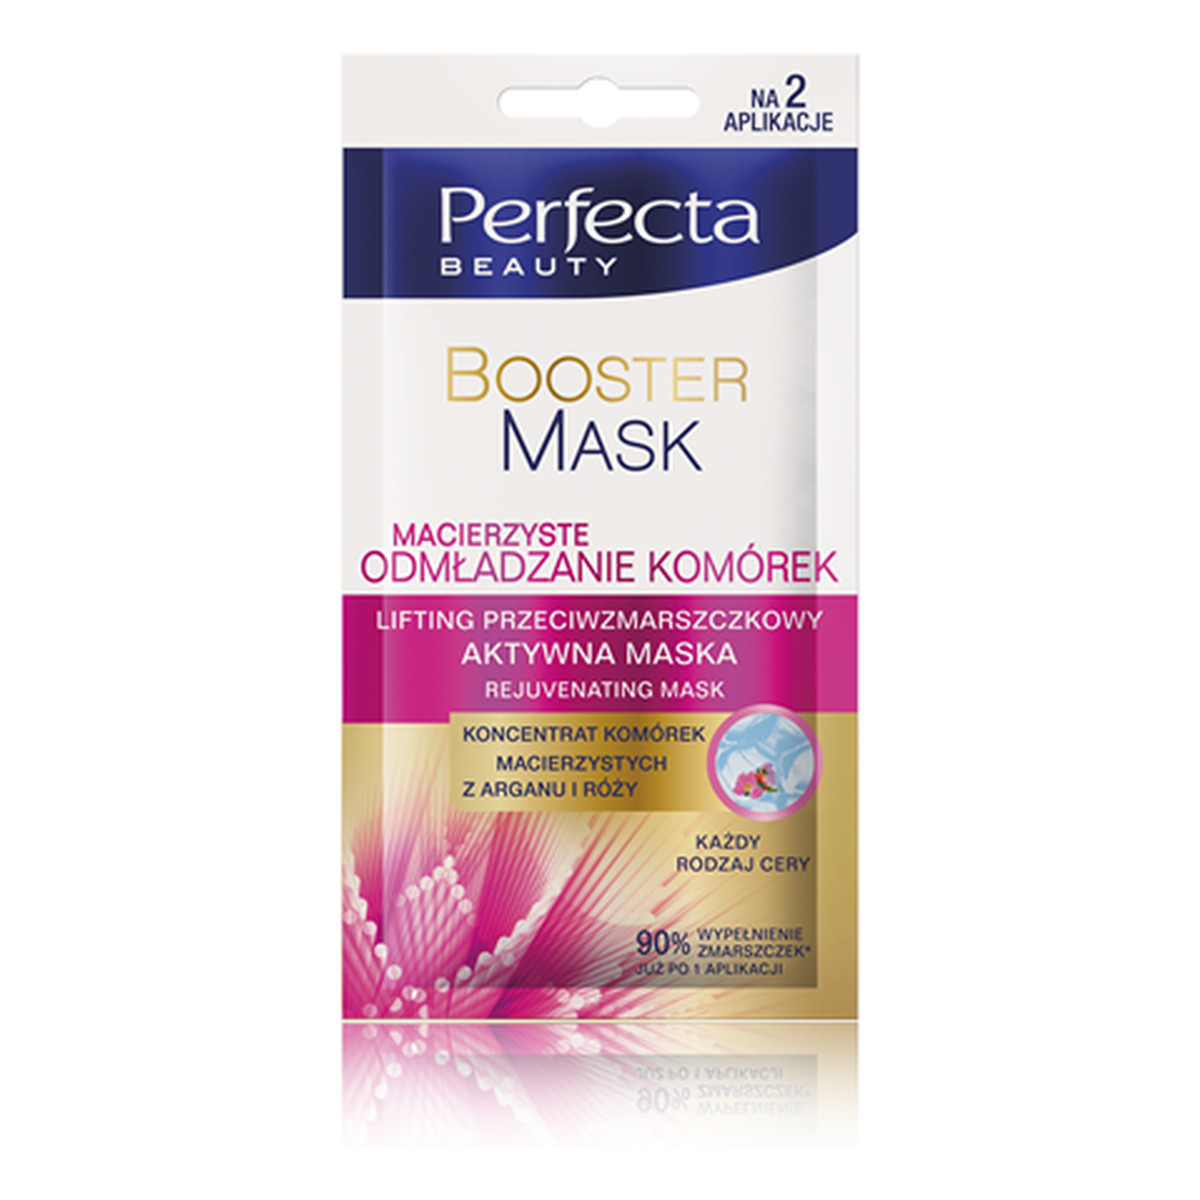 Perfecta Beauty Booster Mask Macierzyste Odmładzanie Komórek Lifting Przeciwzmarszczkowy